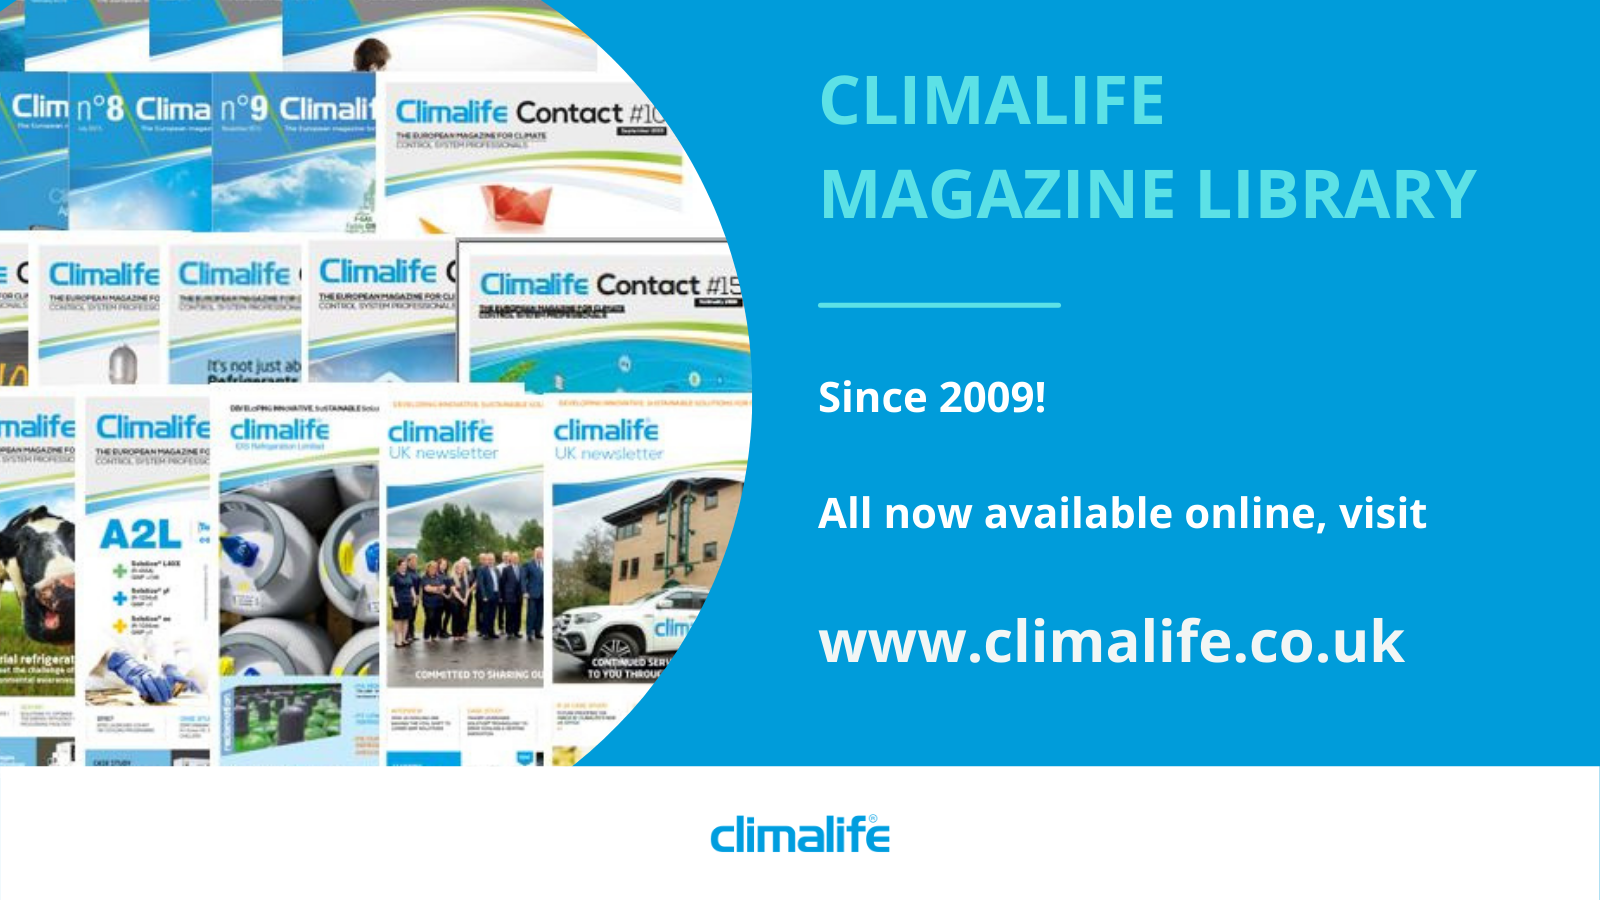 Climalife magazine library